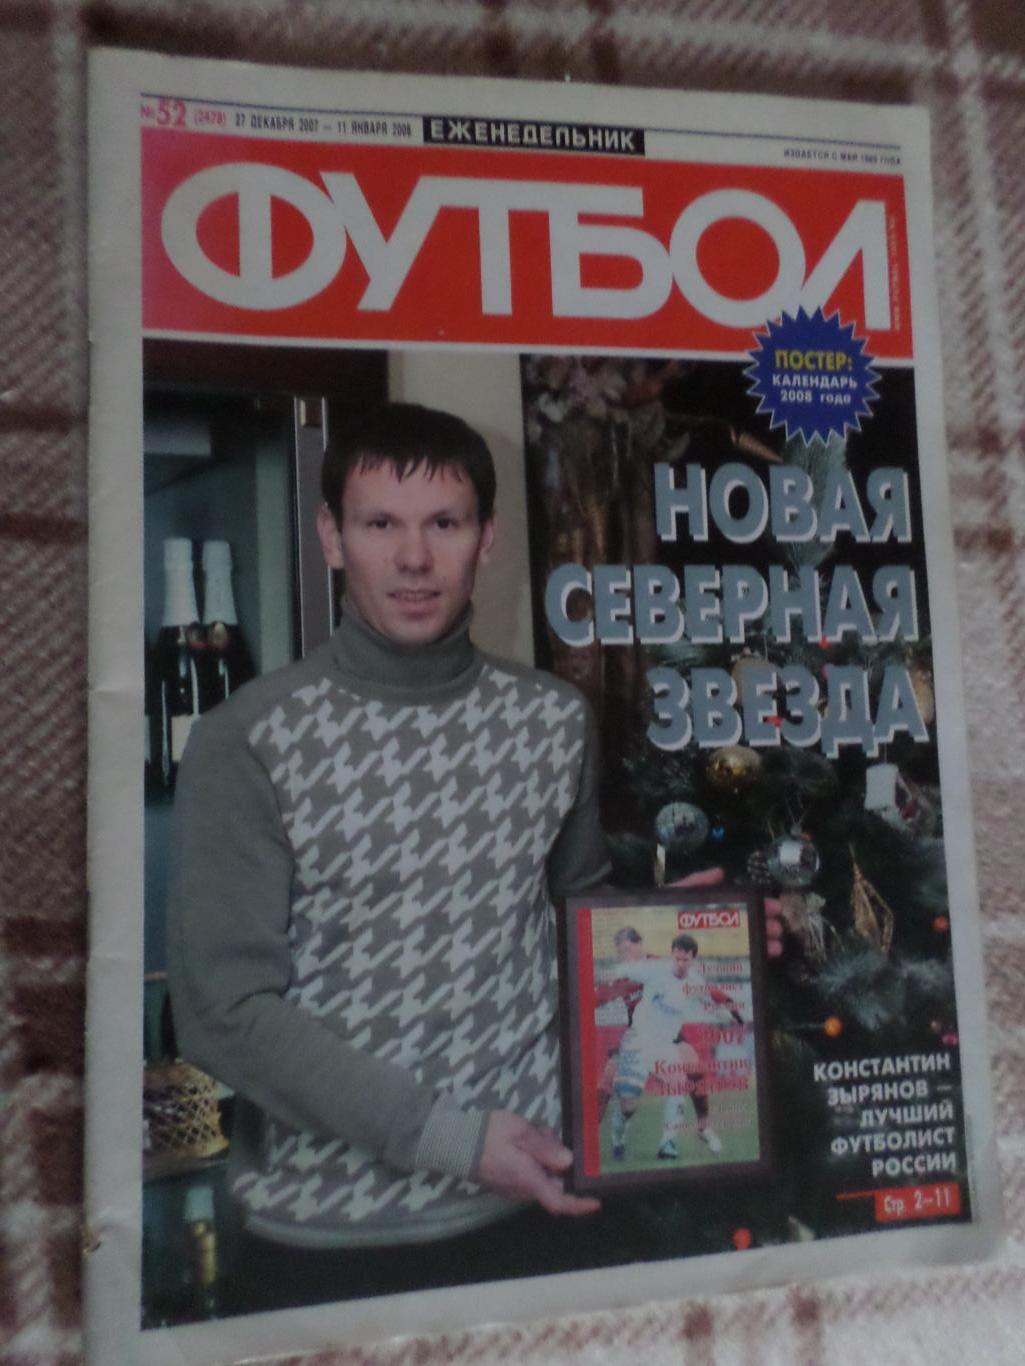 Еженедельник Футбол ( Москва) номер 52, 2008 г